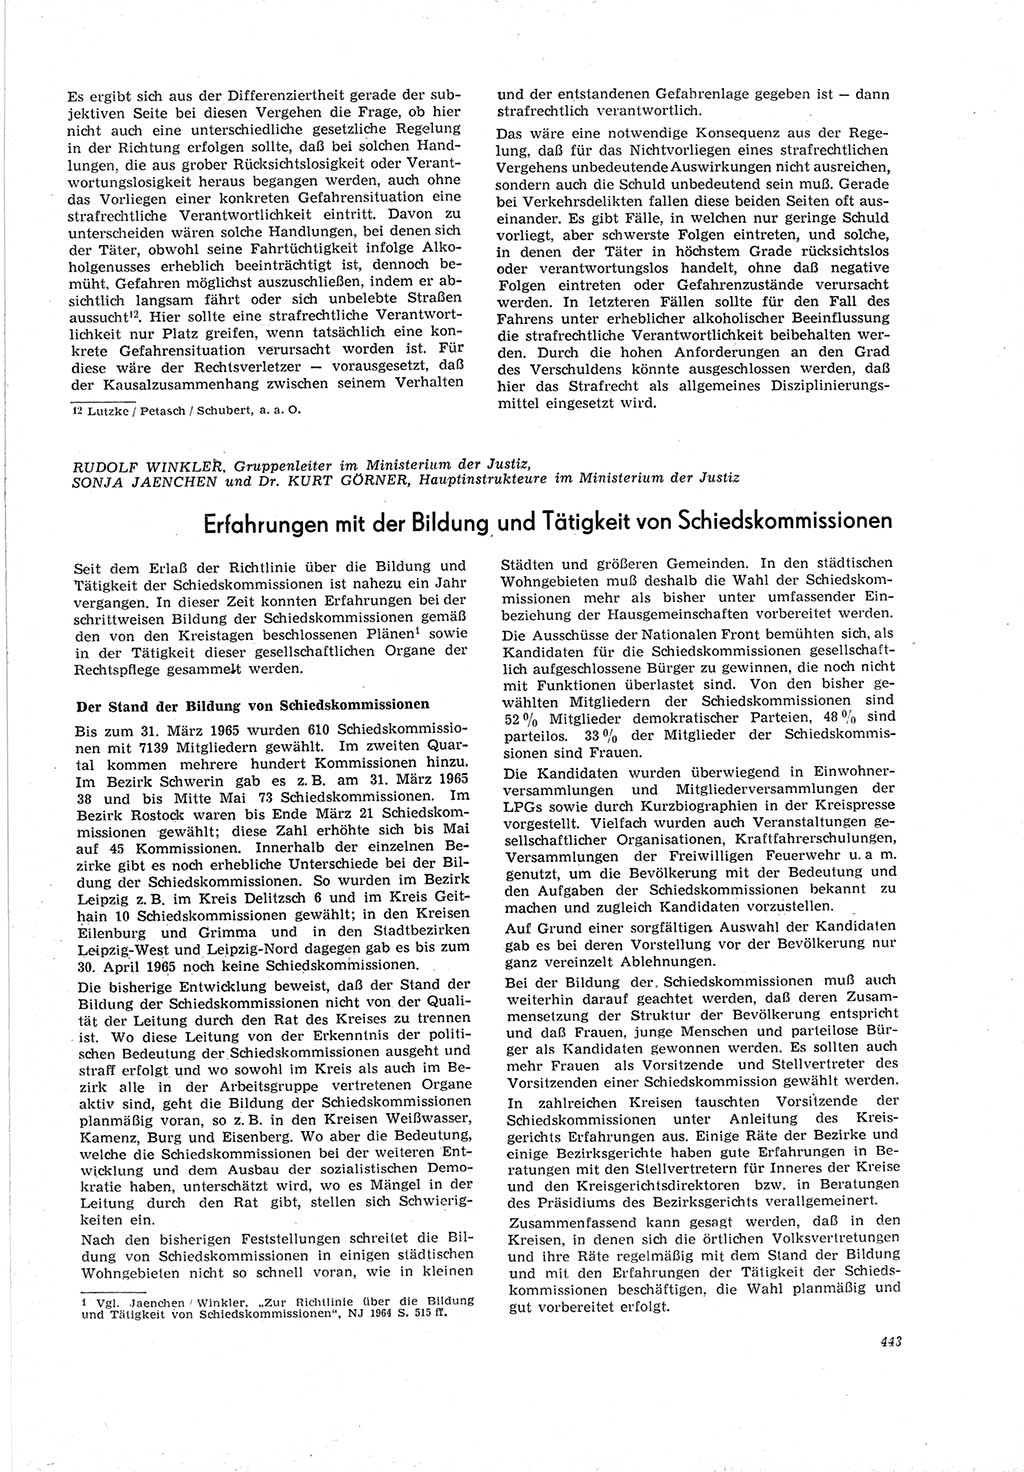 Neue Justiz (NJ), Zeitschrift für Recht und Rechtswissenschaft [Deutsche Demokratische Republik (DDR)], 19. Jahrgang 1965, Seite 443 (NJ DDR 1965, S. 443)